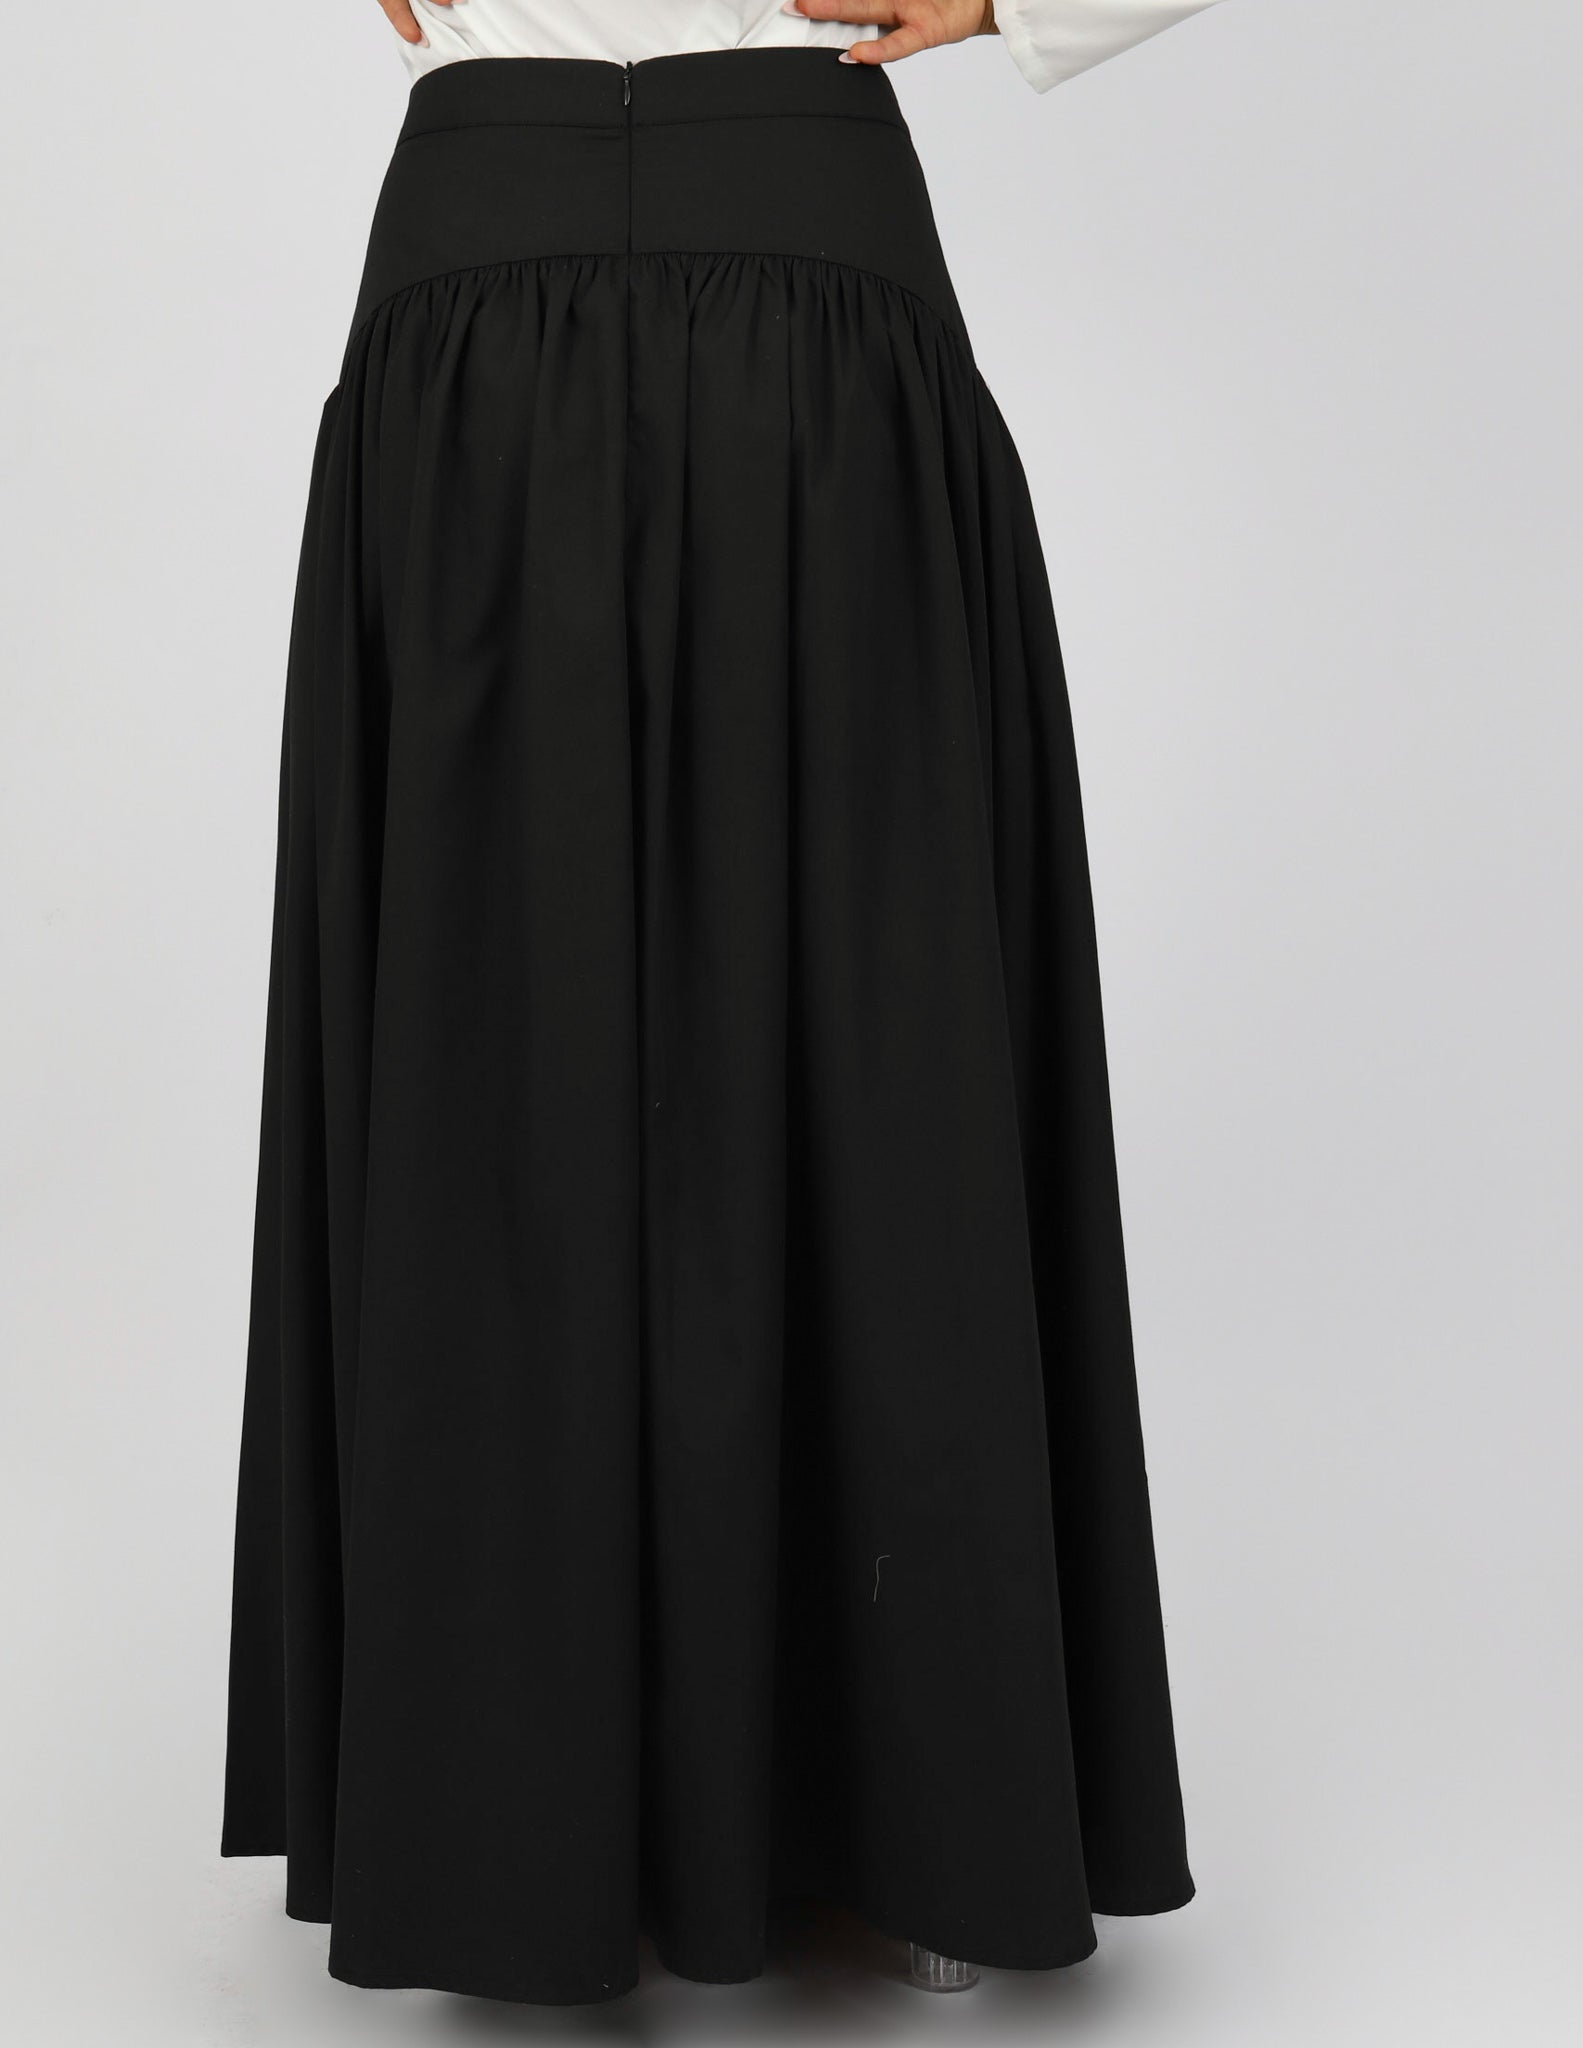 Skirts for Women Online - Escape Meira Maxi Skirt | Modelle